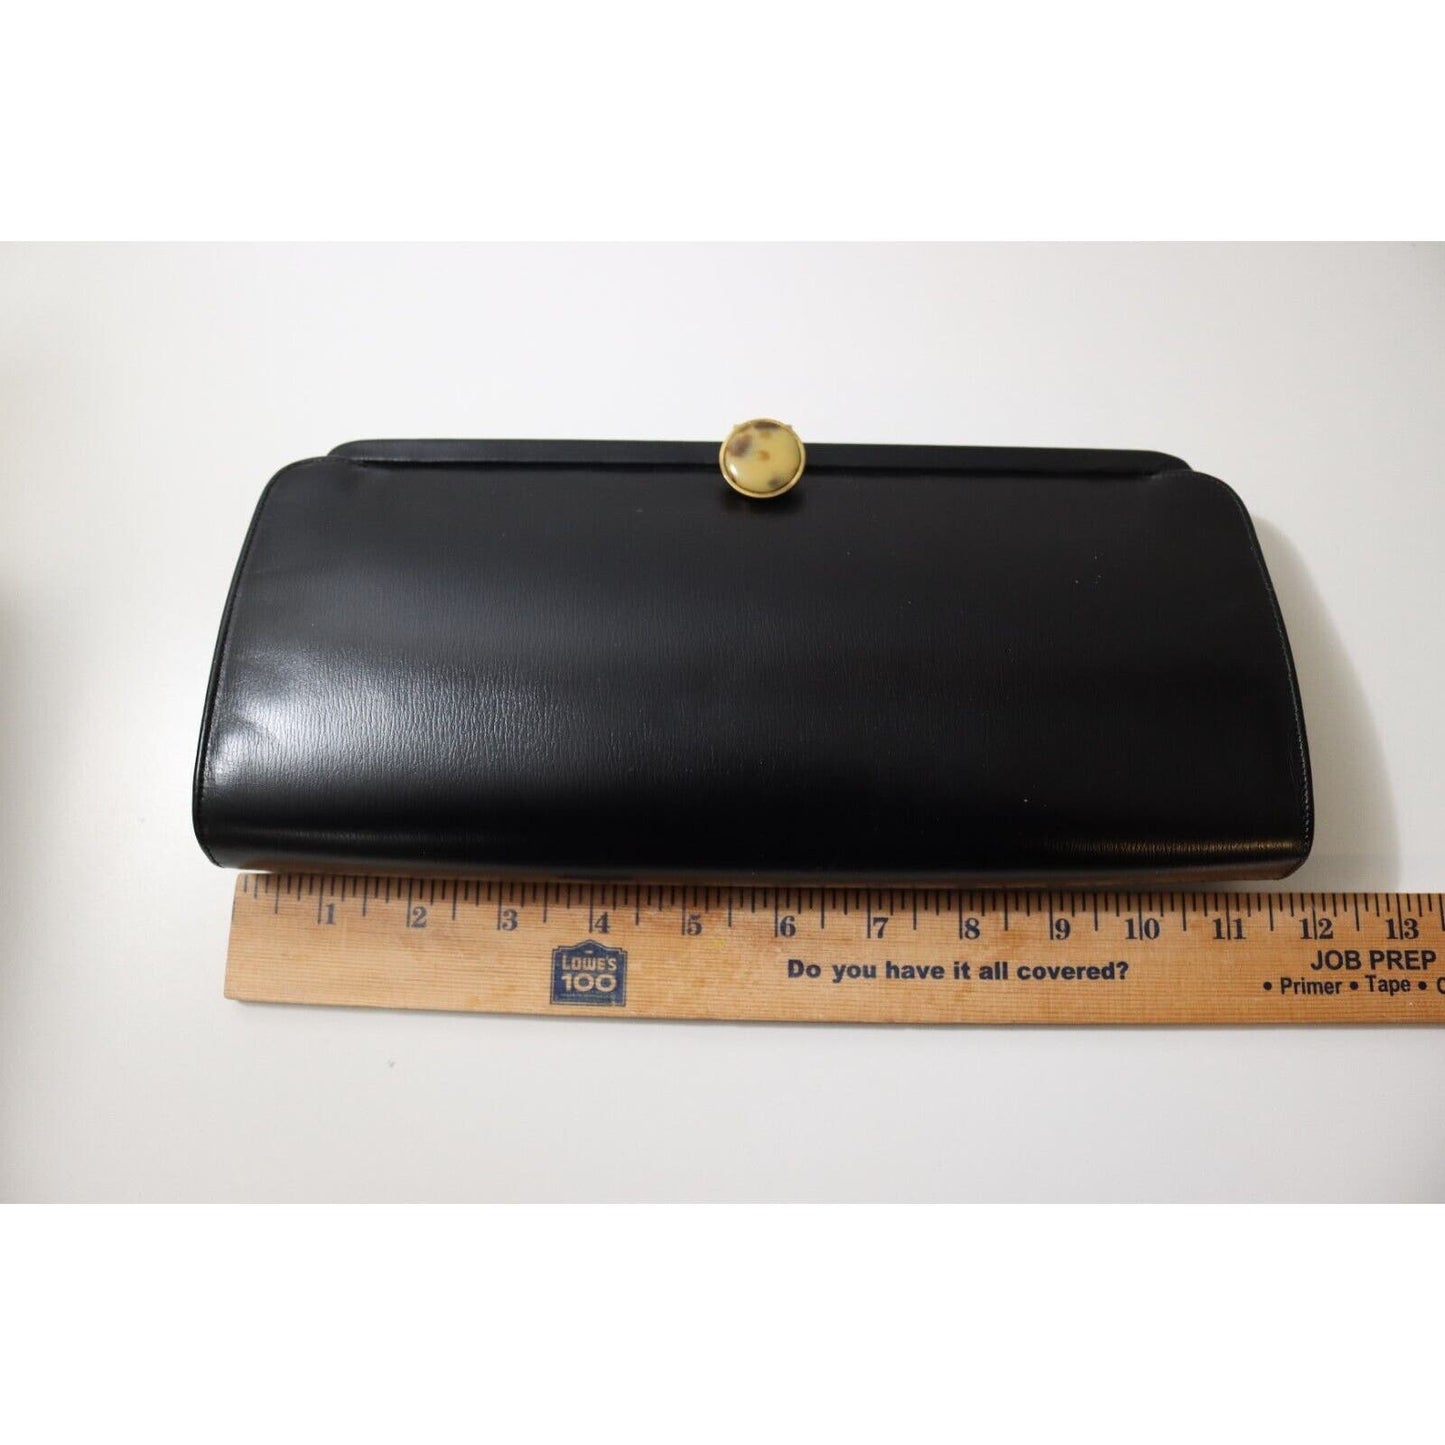 Vintage Milch Black Clutch Handbag Leather